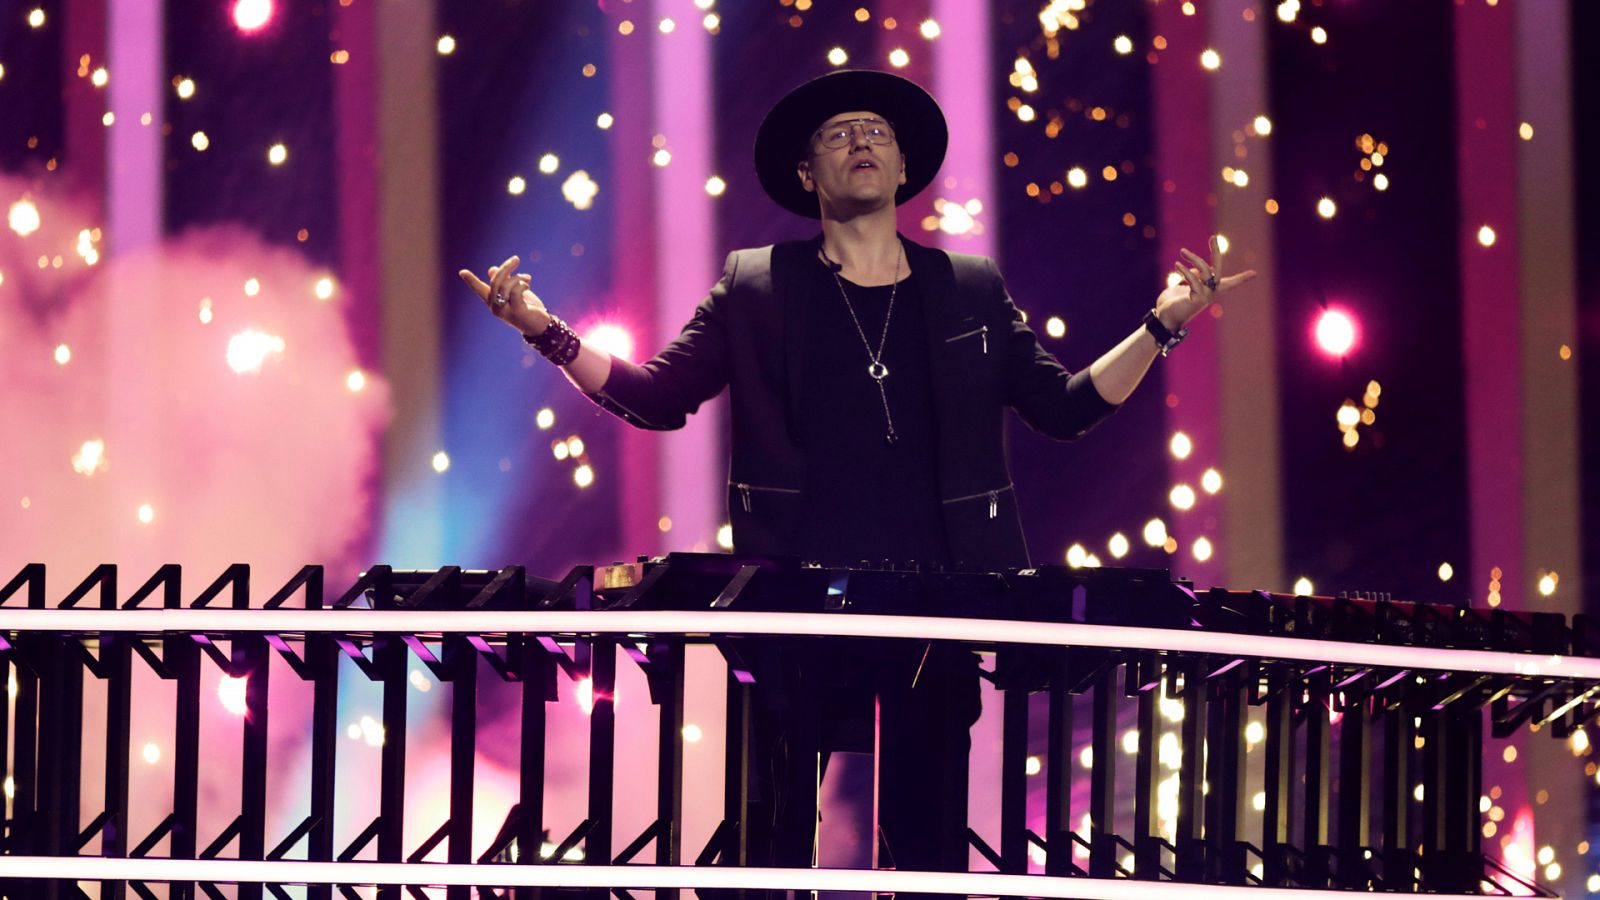 Eurovisión - Polonia: Gromee y Lukas Meijer canta Light me up - RTVE.es